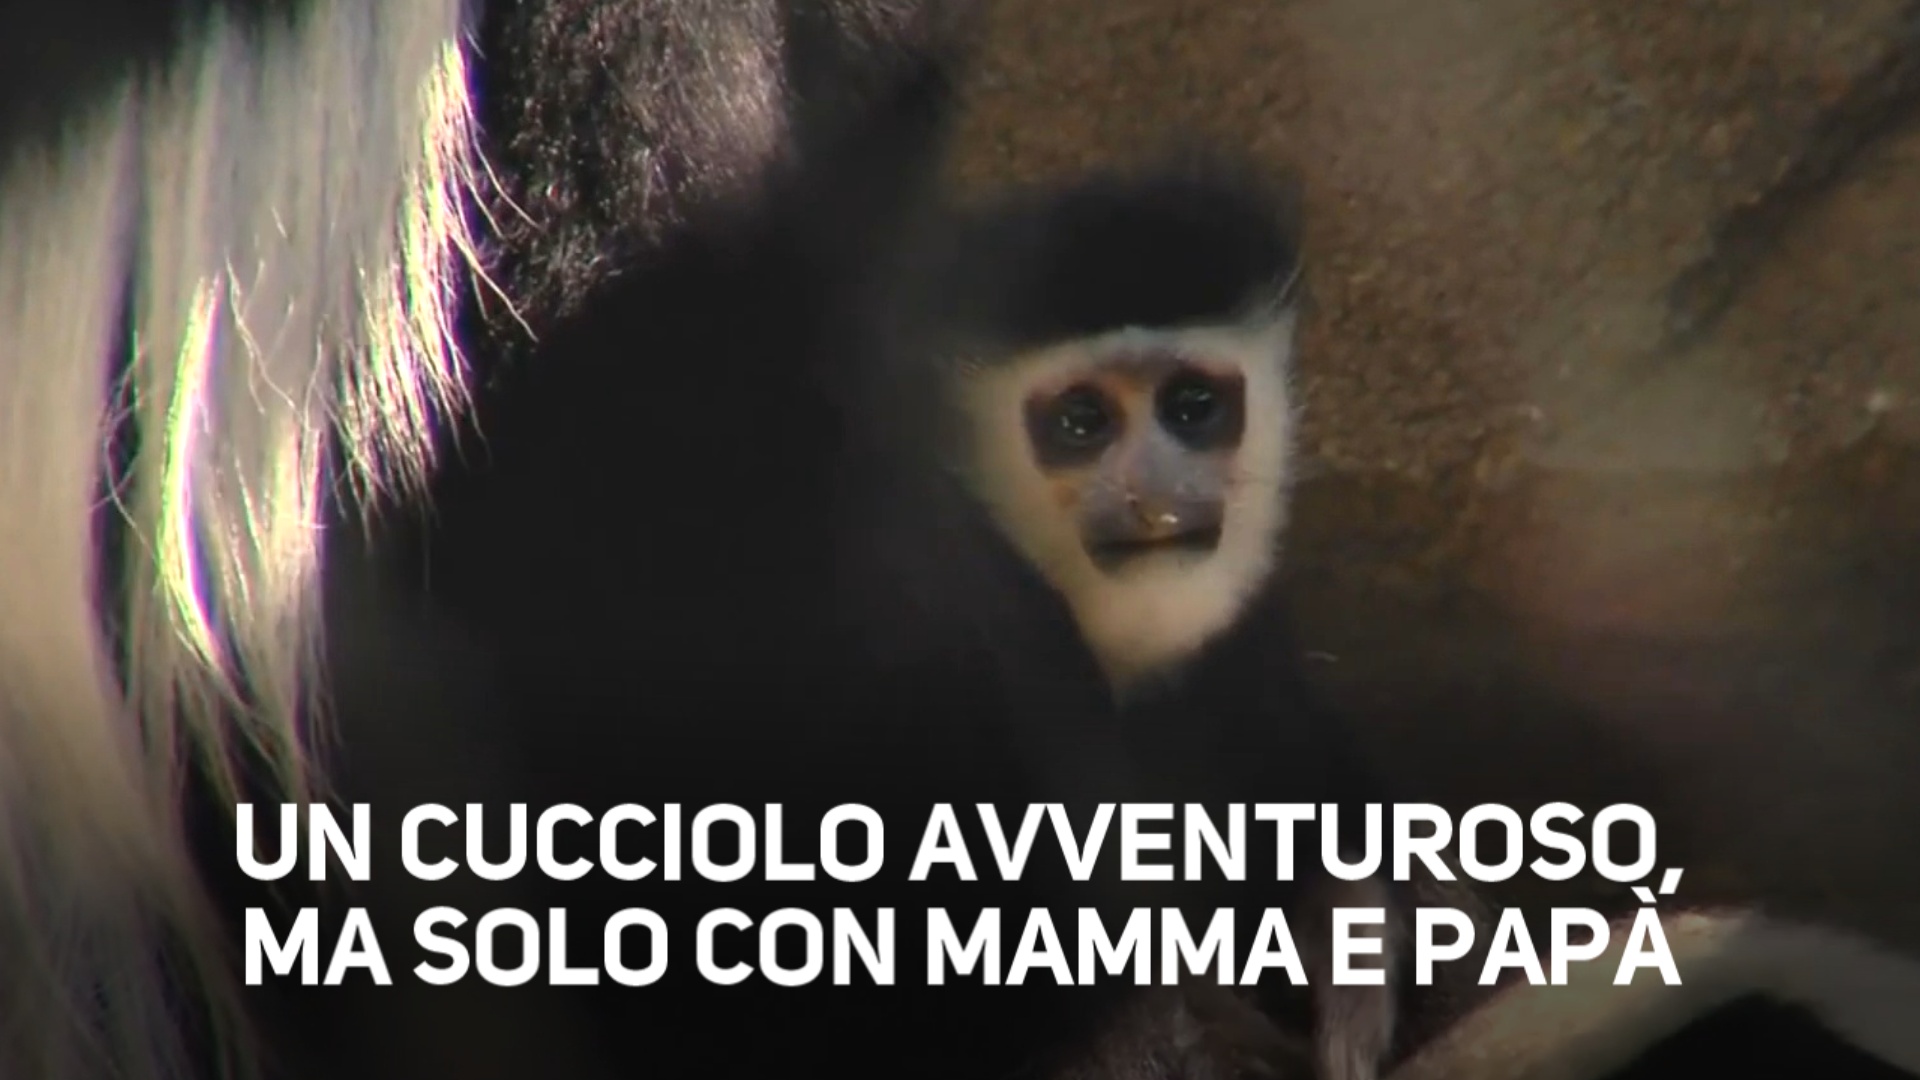 Una scimmietta paurosa: esce solo con la mamma!